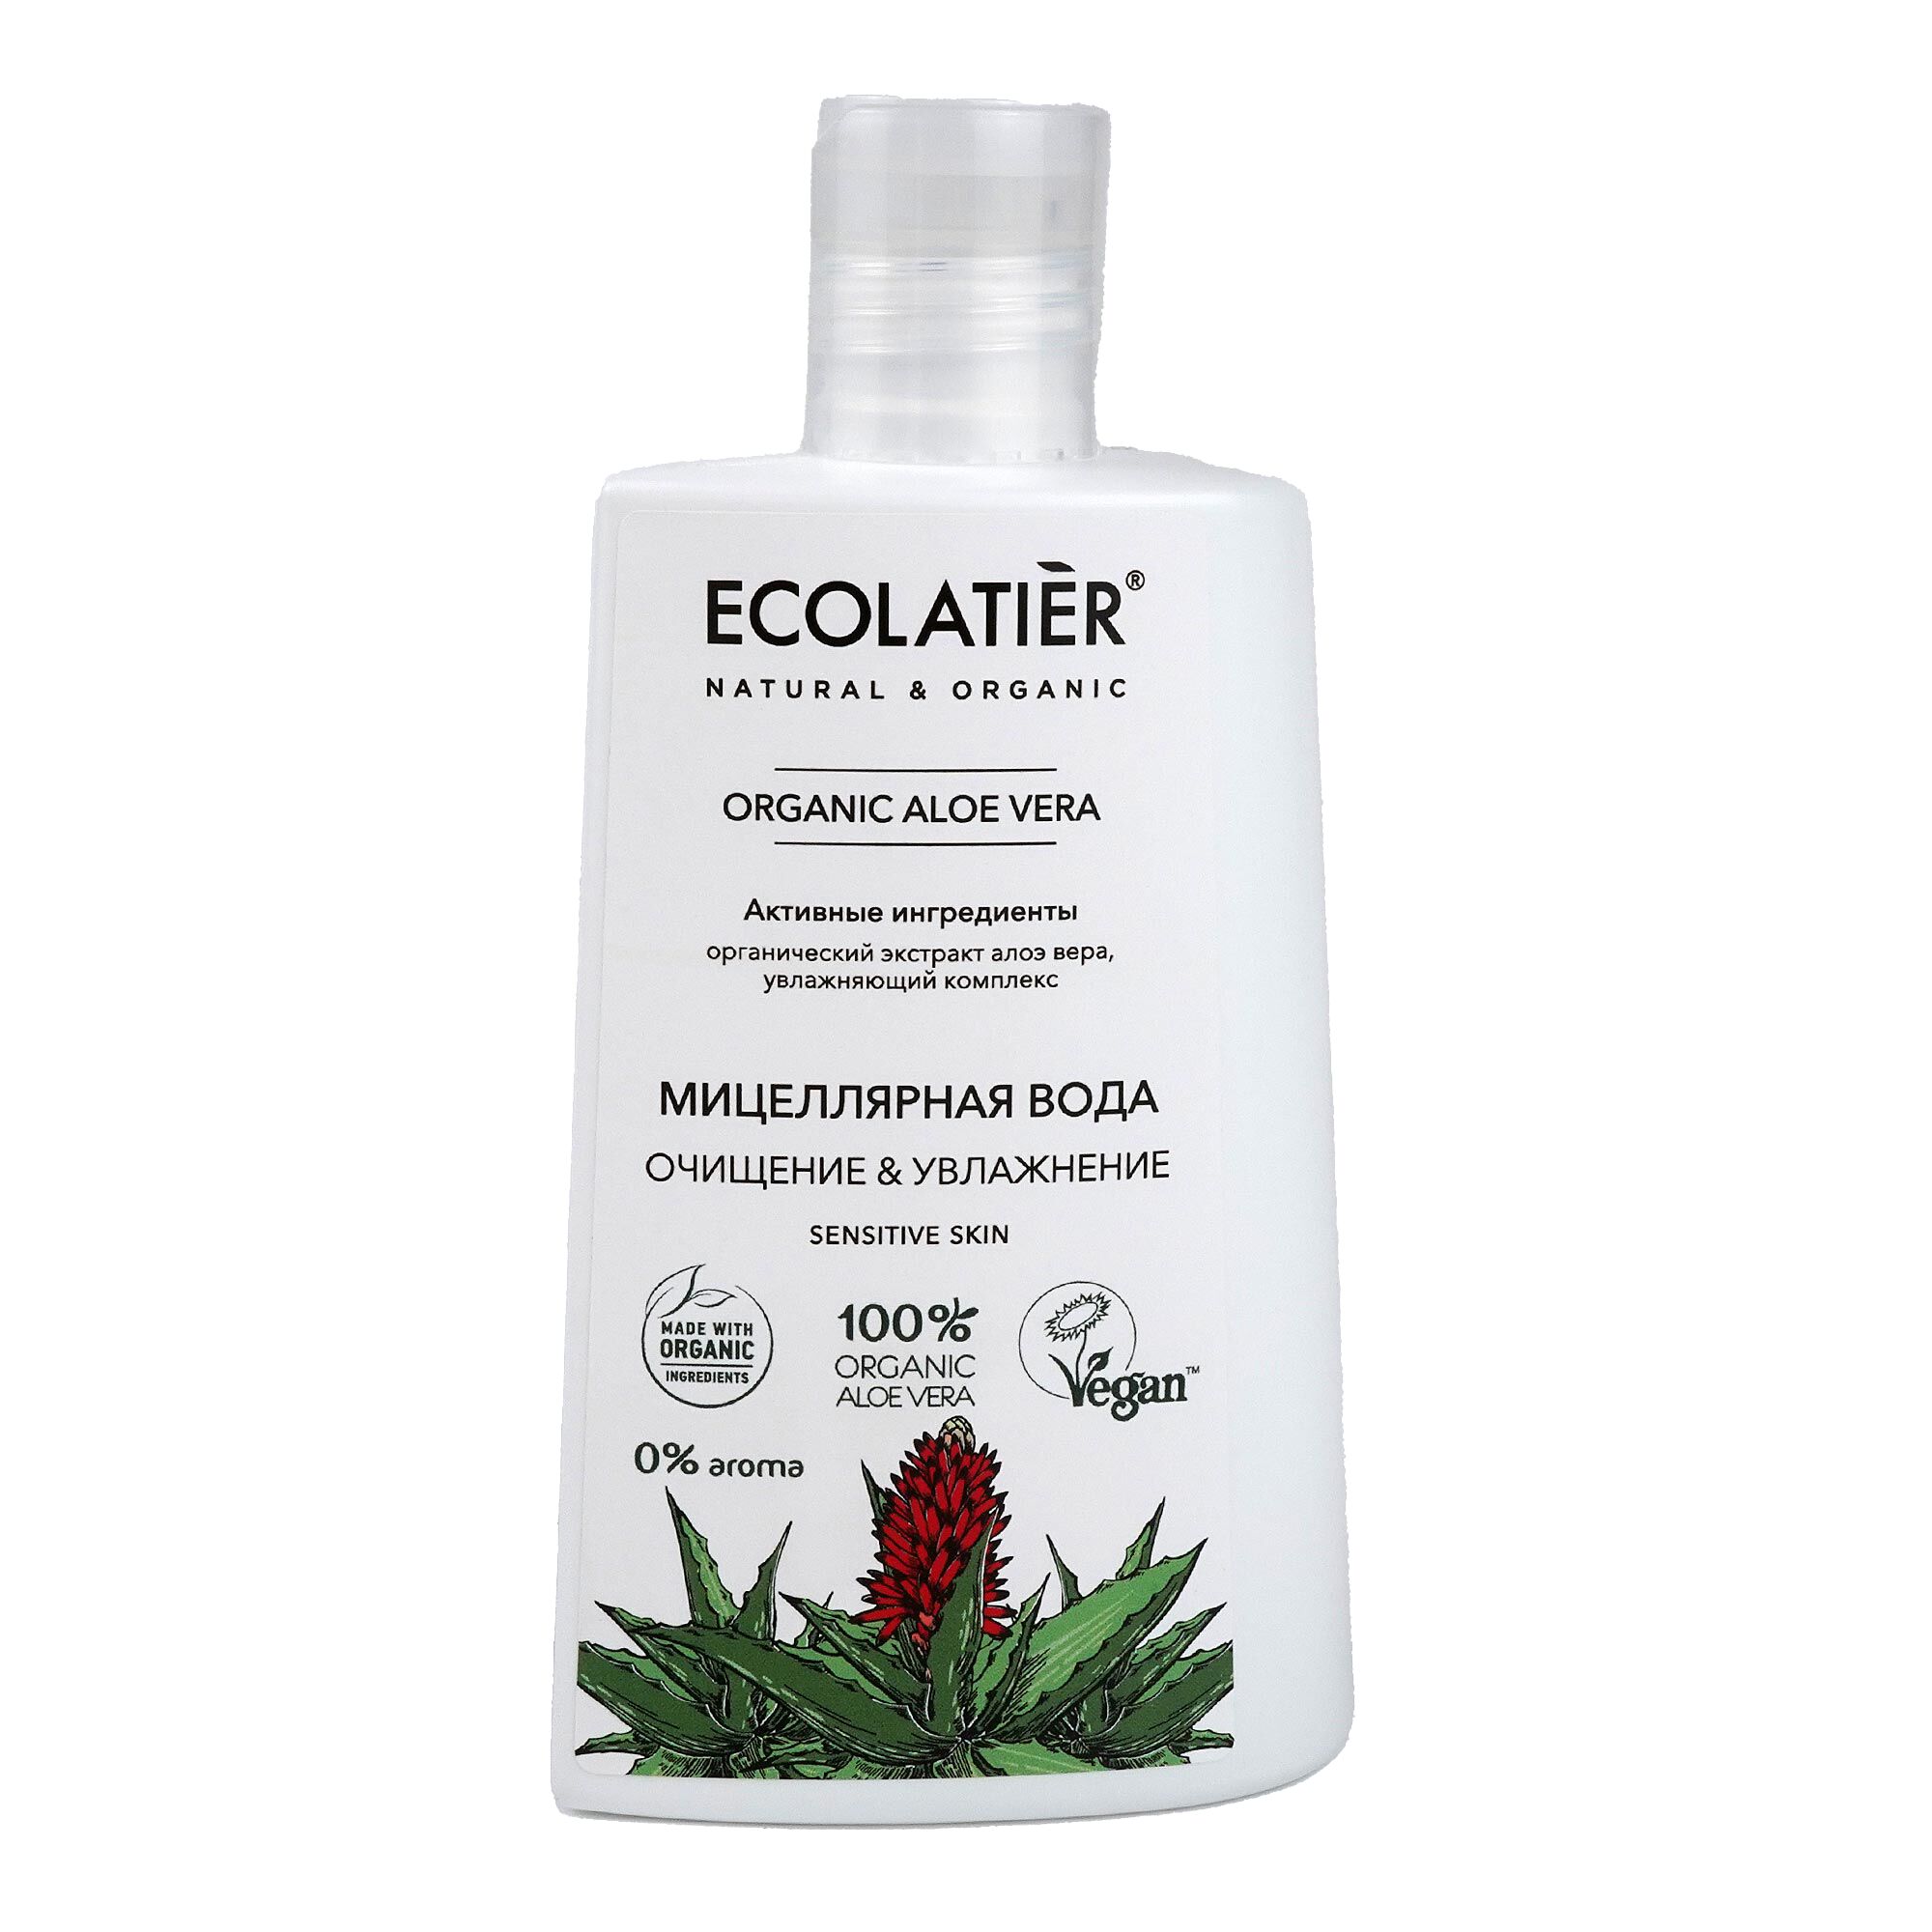 Ecolatier Мицеллярная вода Очищение и увлажнение  Organic Aloe Vera